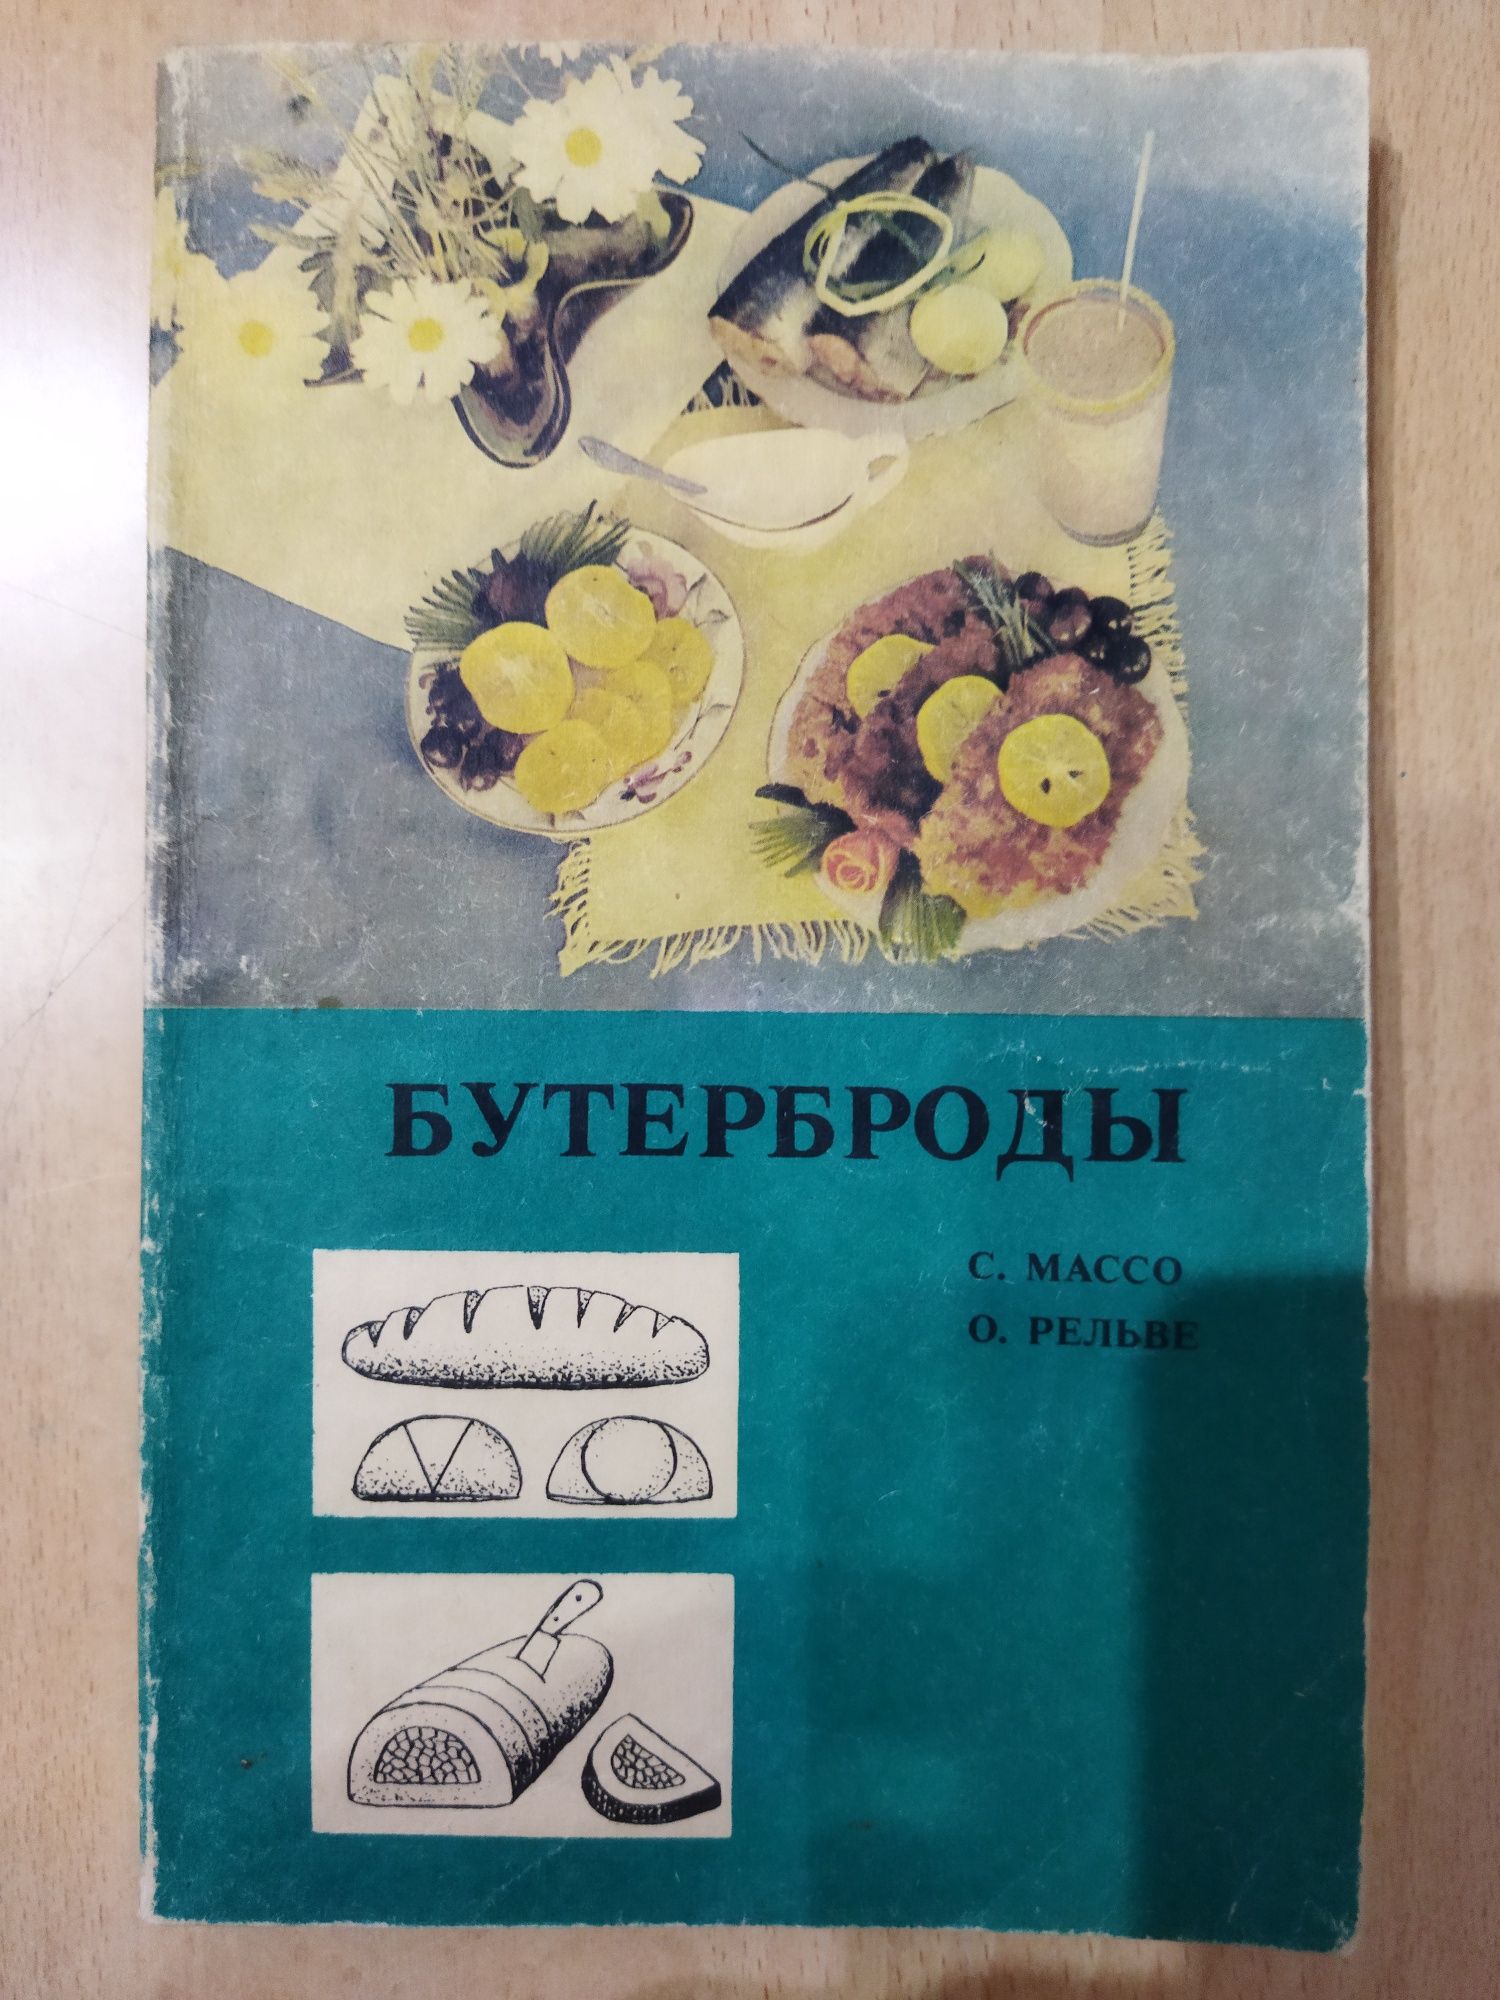 Книги с рецептами